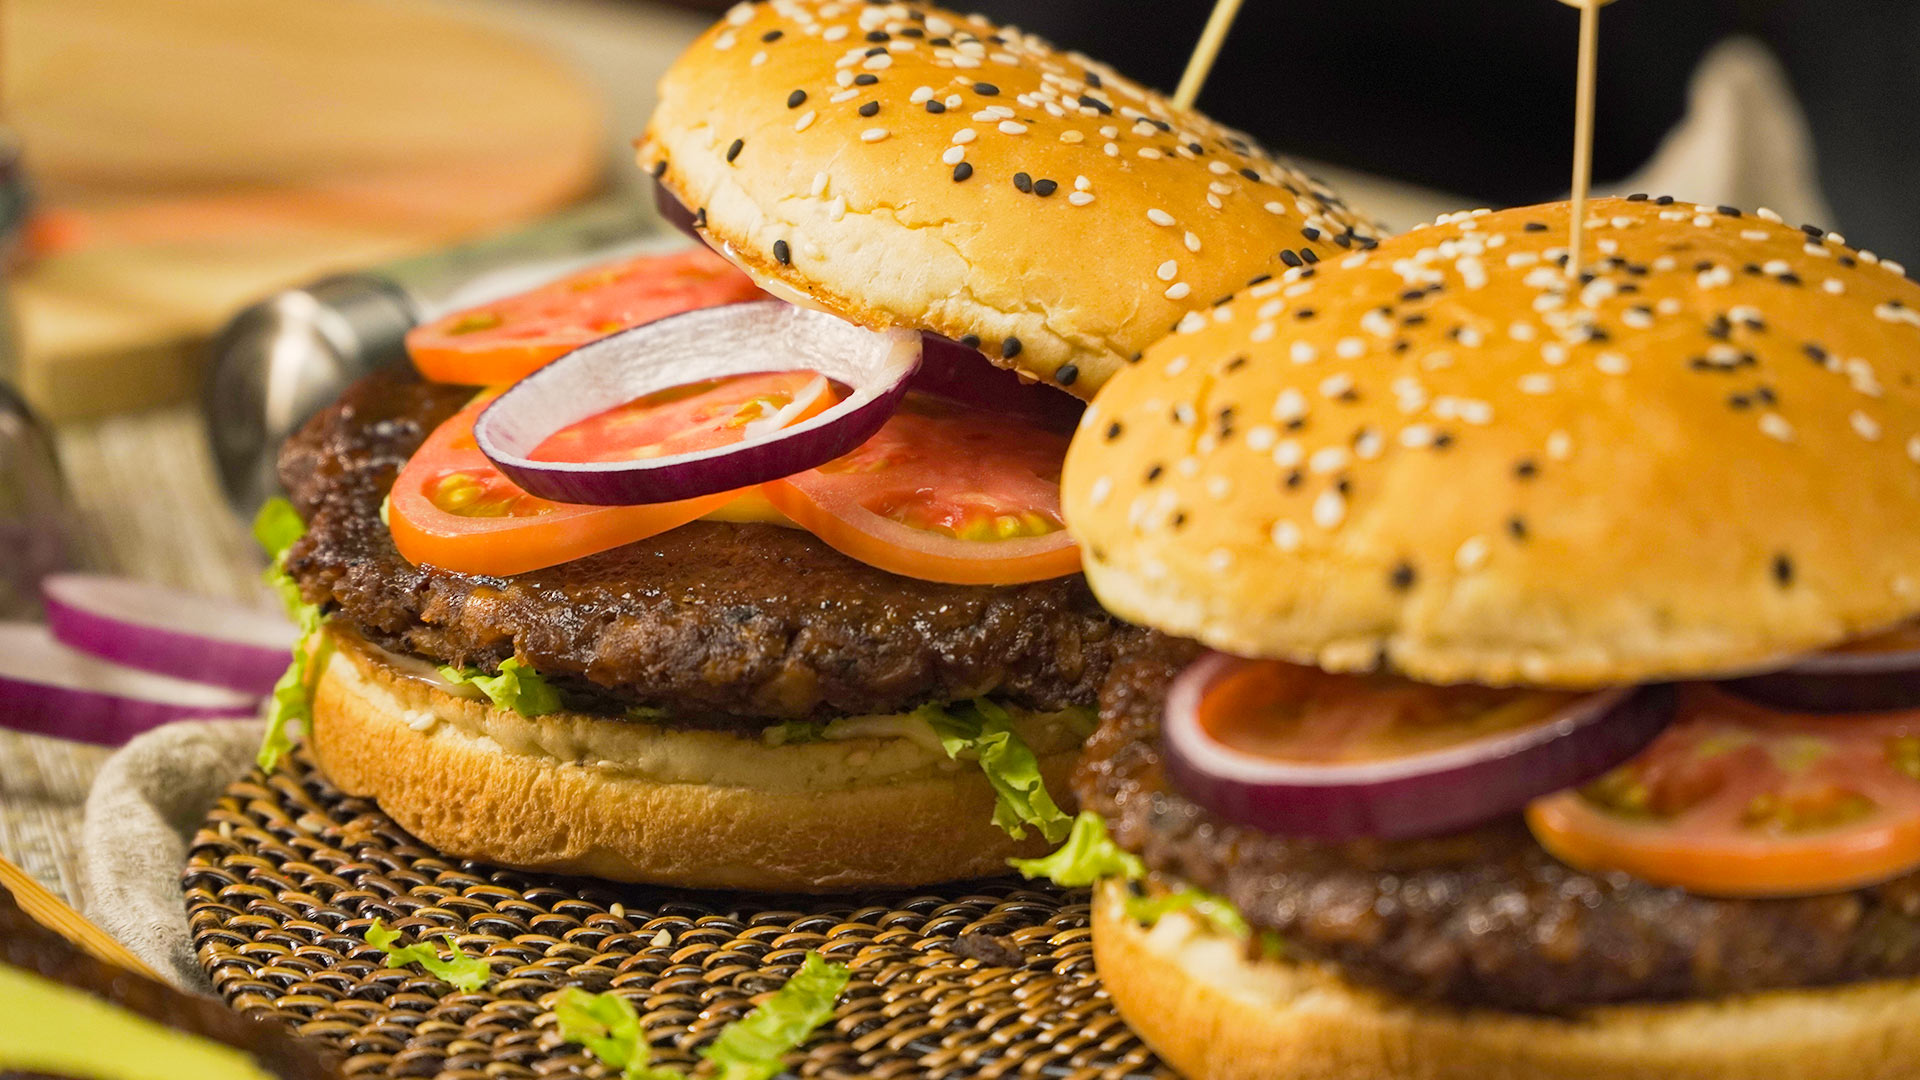 https://recipes.net/wp-content/uploads/2020/08/better-than-burger-king-veggie-burger-recipes.jpg